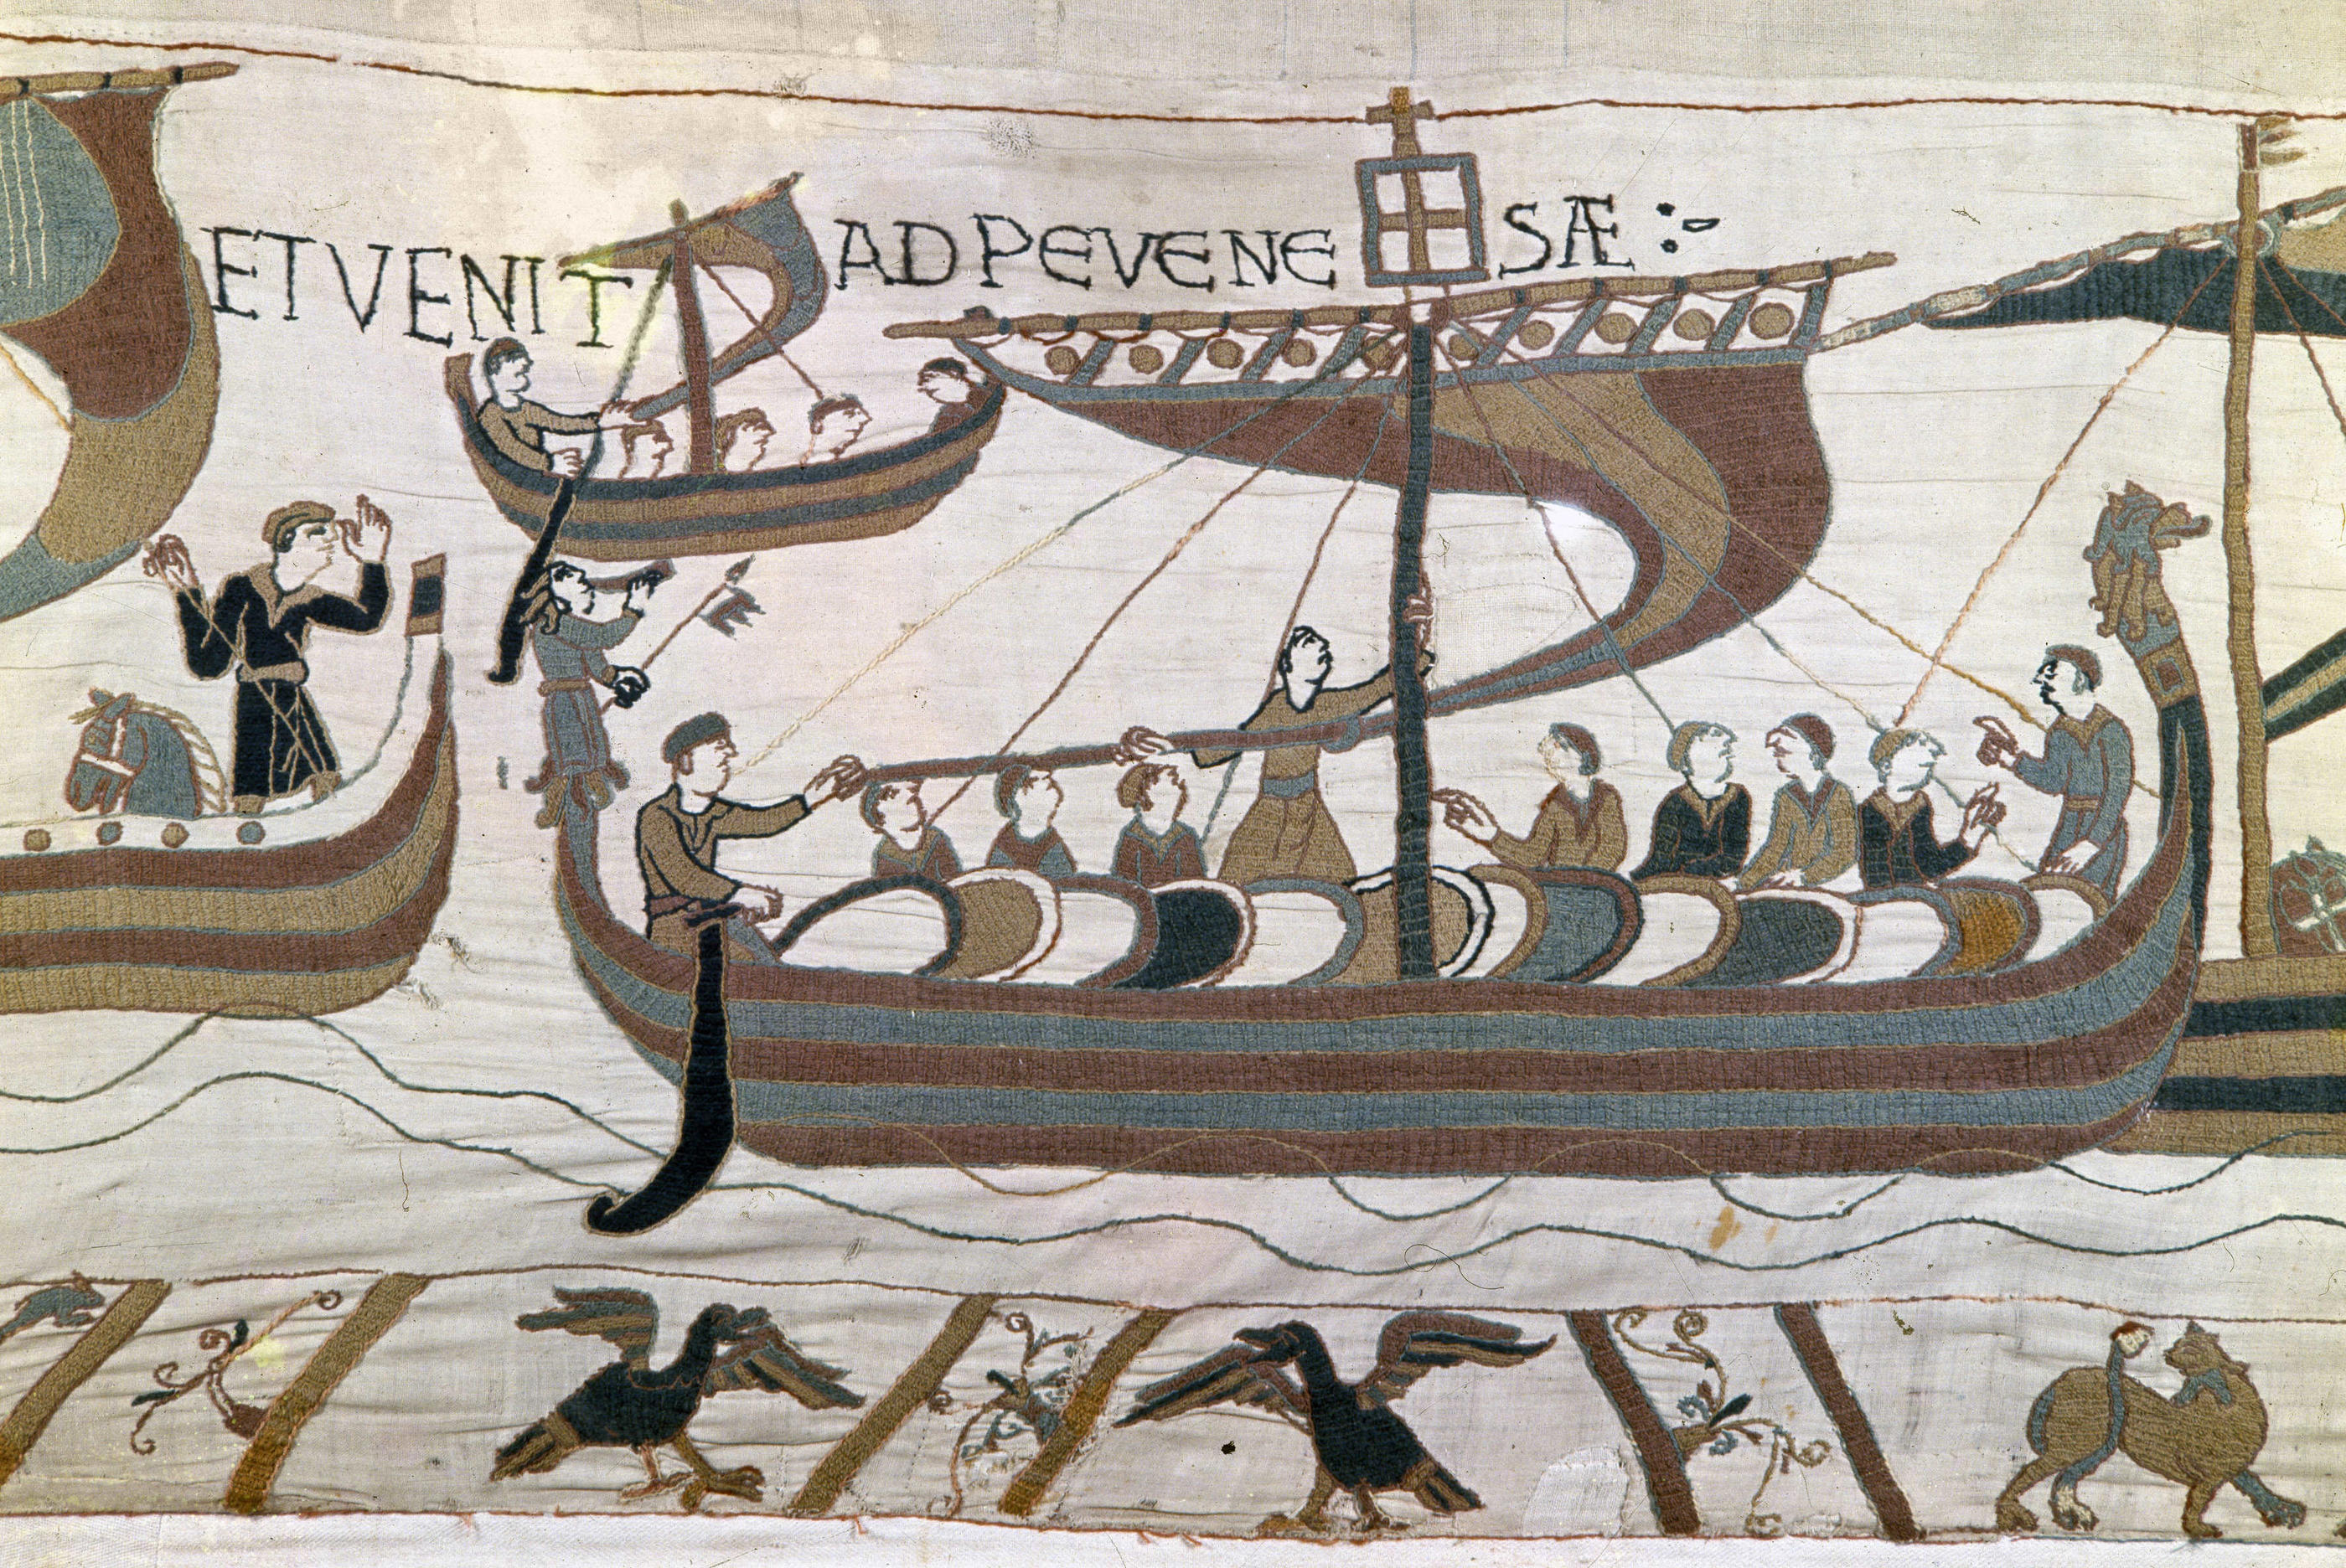 Malgré l’absence des plans de l’époque, les connaissances actuelles permettent de savoir à quoi ressemblait «la Mora» (ici représentée sur la Tapisserie de Bayeux), le navire amiral avec lequel Guillaume le Conquérant traversa la Manche pour s’emparer de l’Angleterre en 1066. Bridgeman Images/Raffaello Bencini.